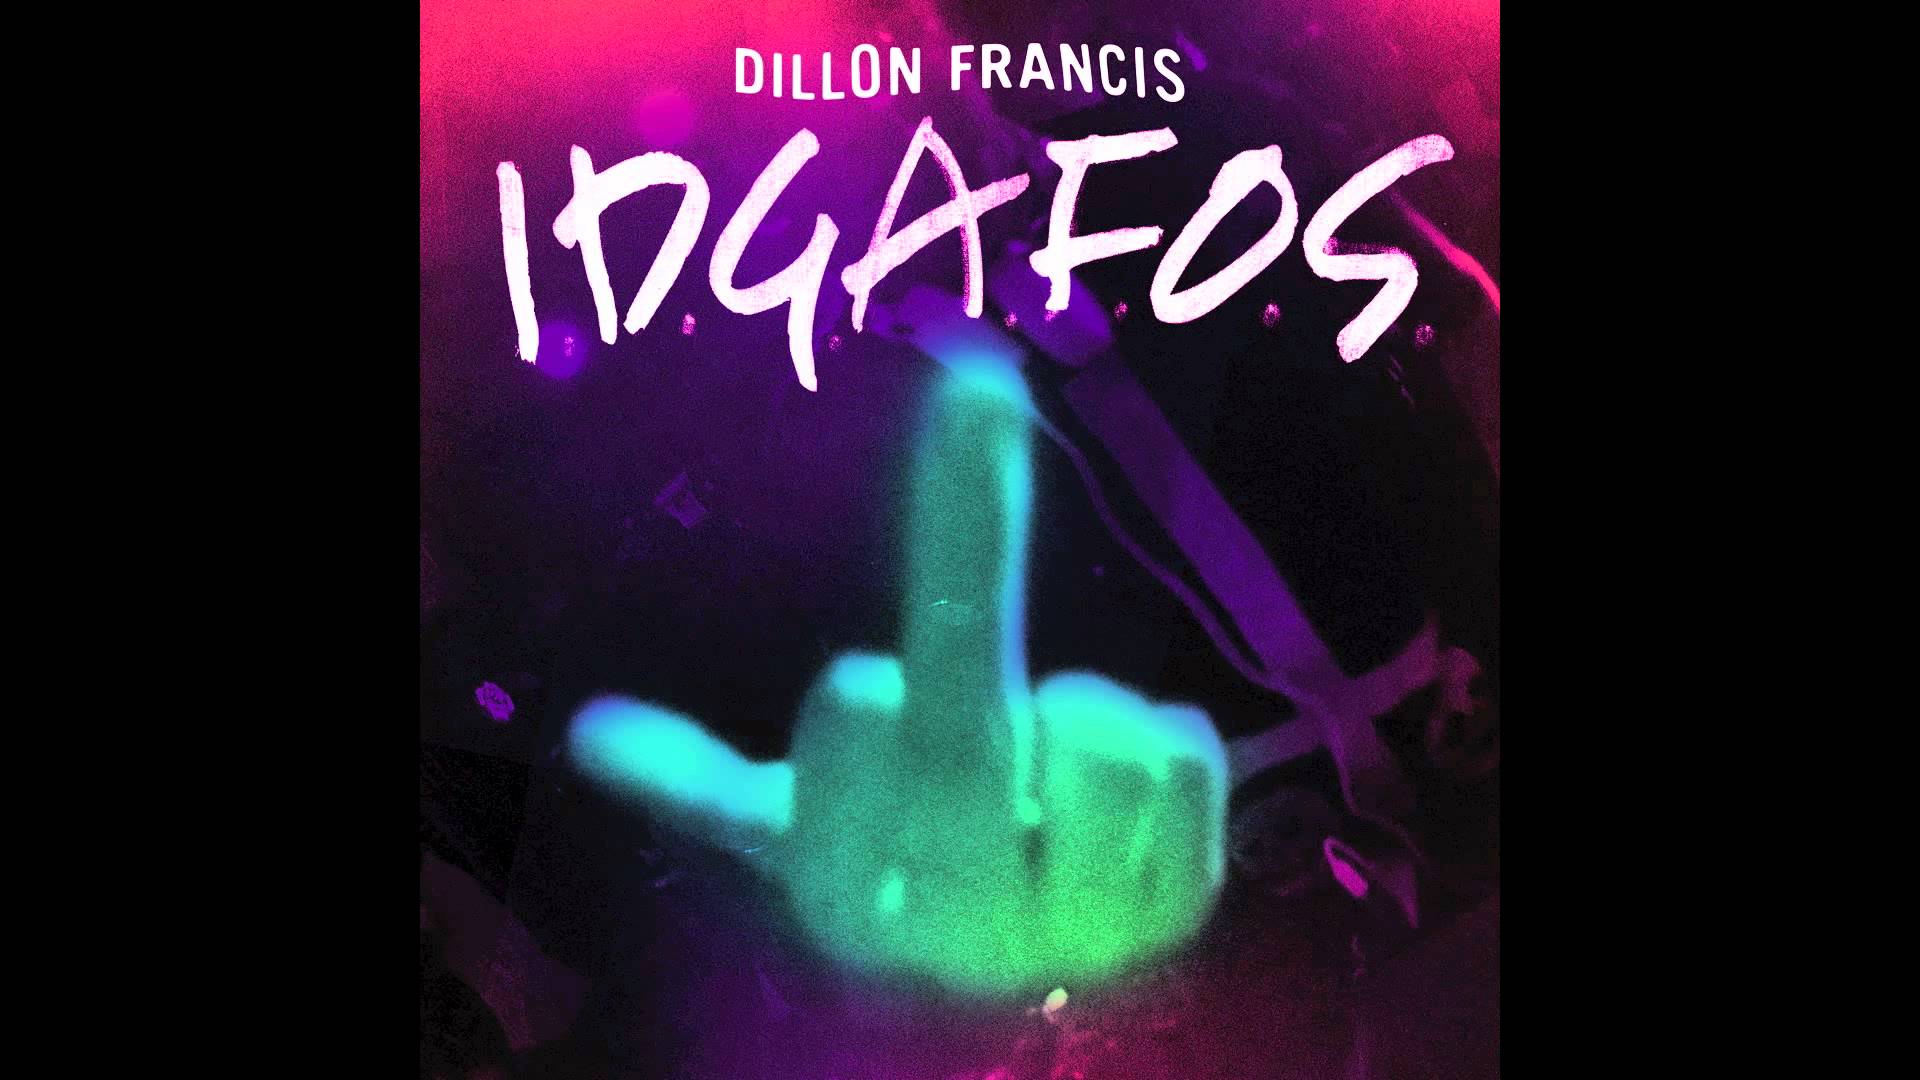 DILLON FRANCIS.D.G.A.F.O.S